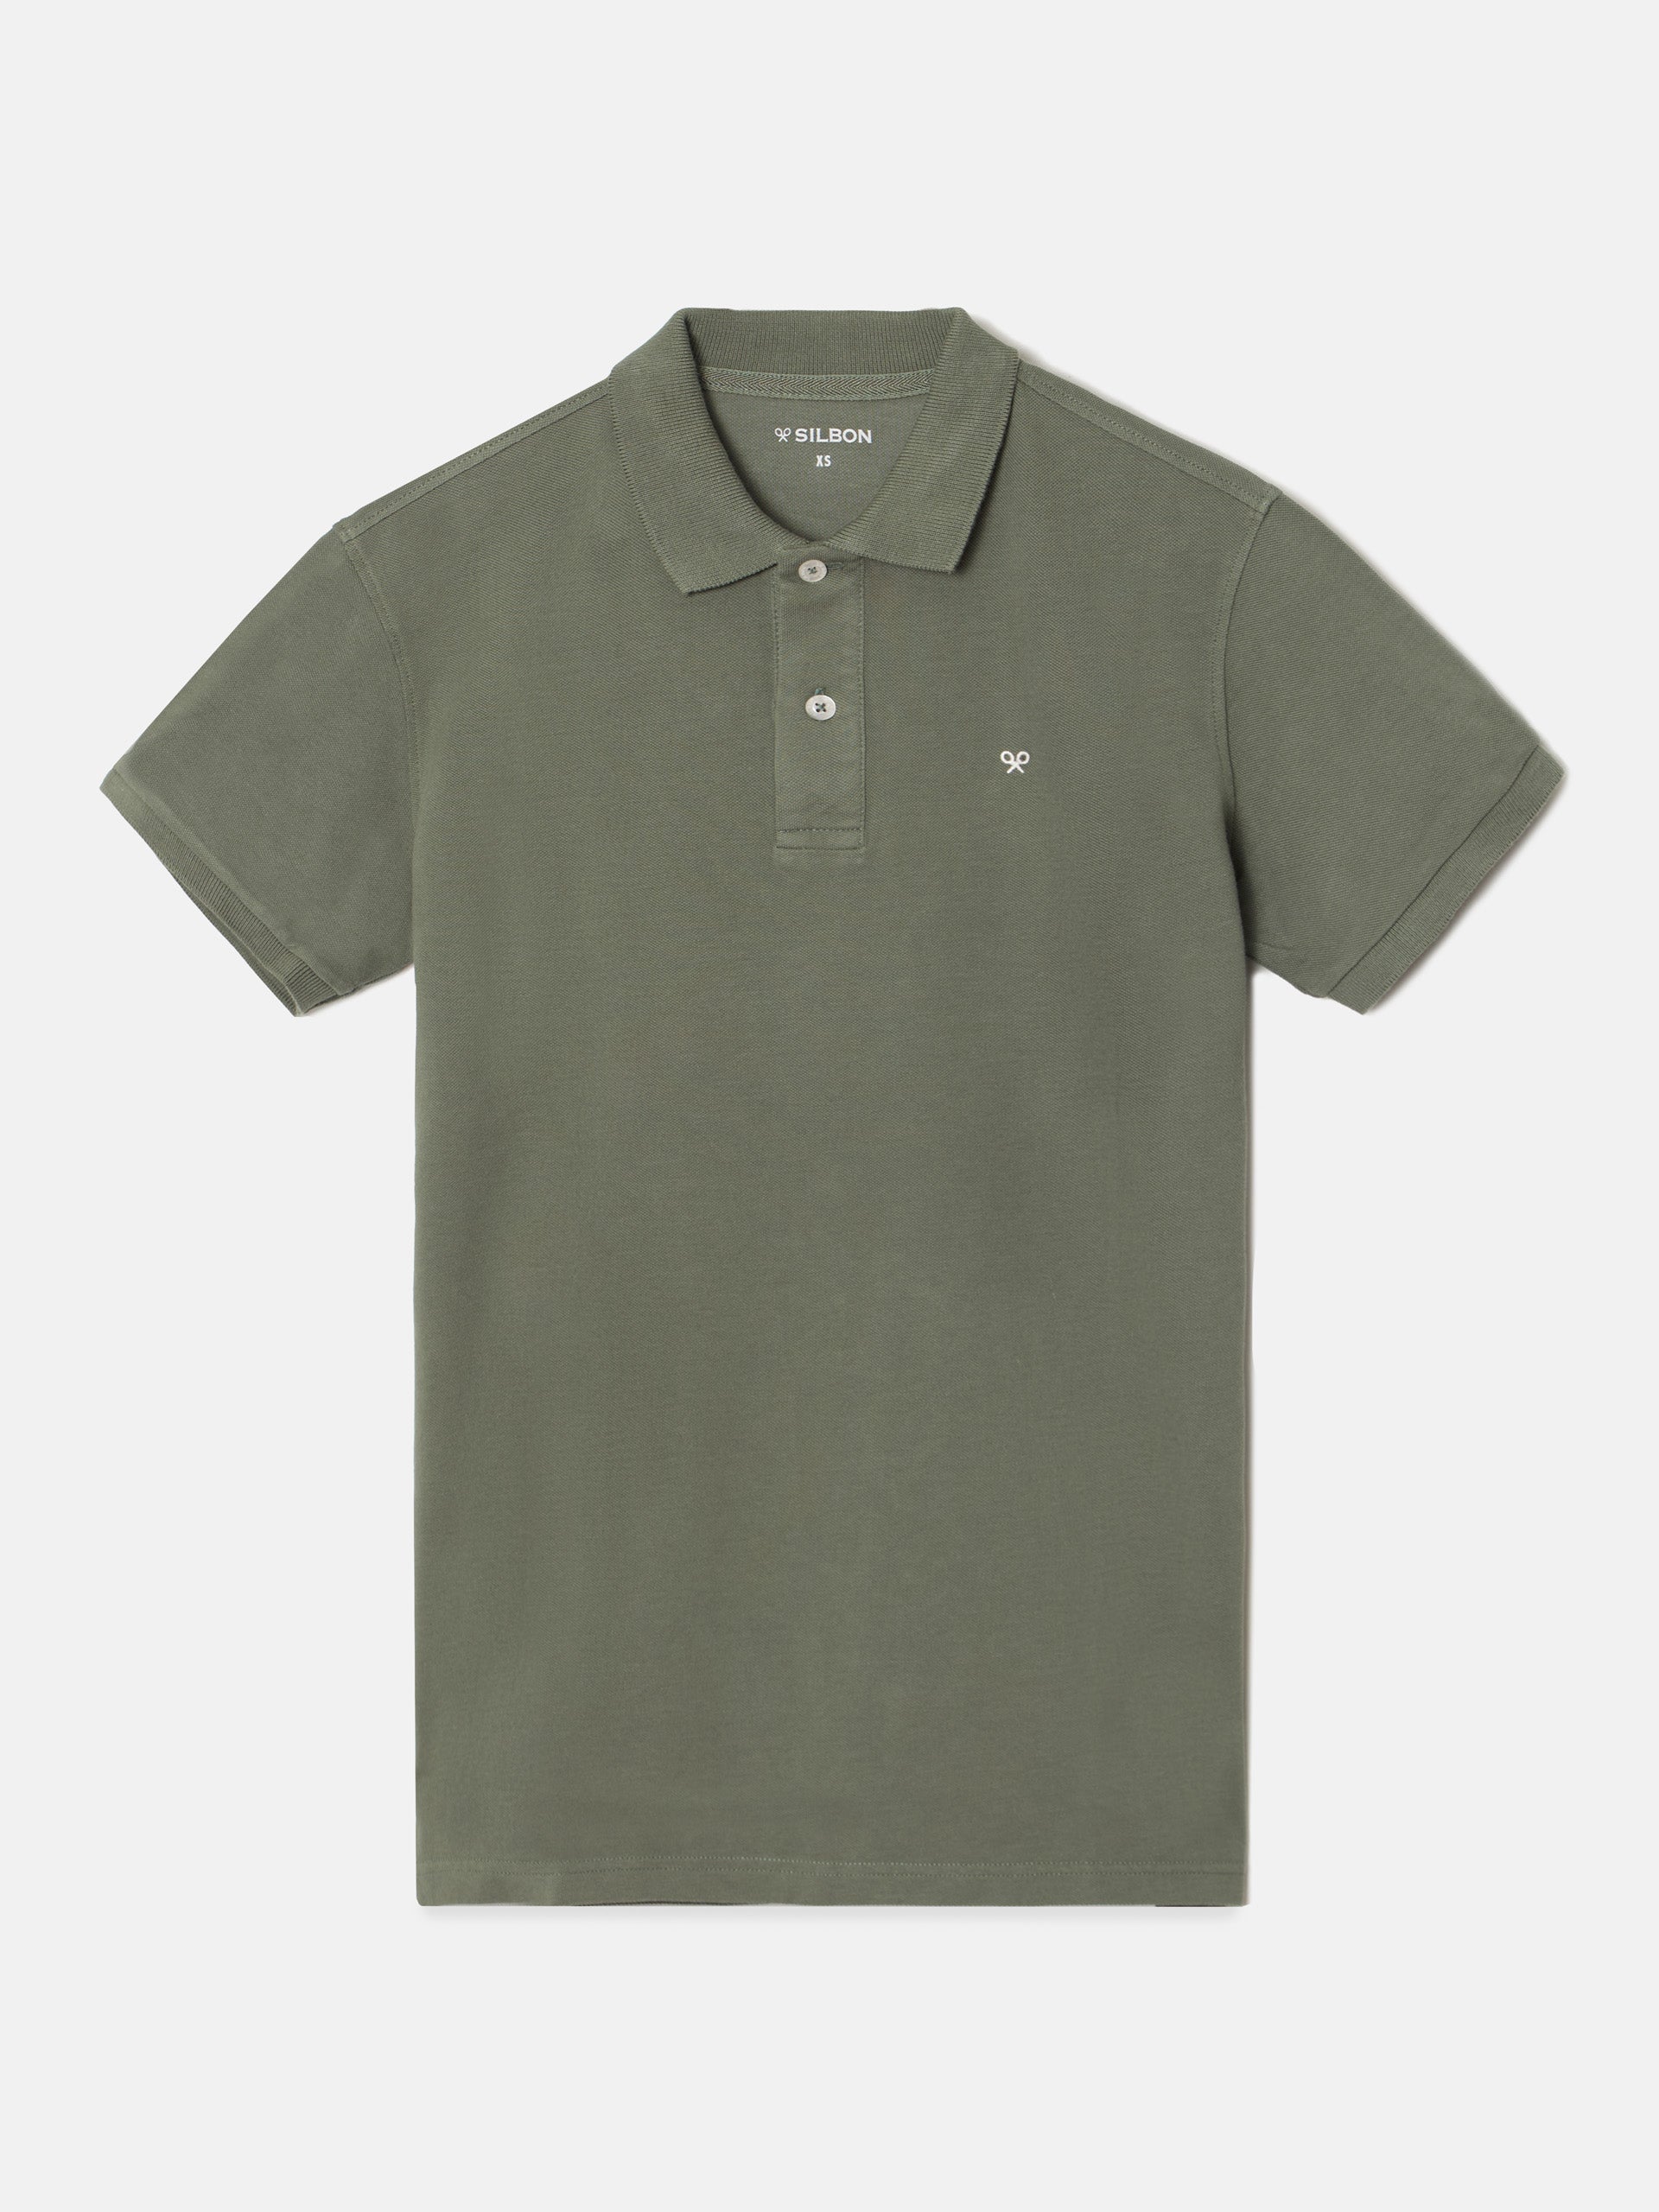 Classic plain dark green polo shirt